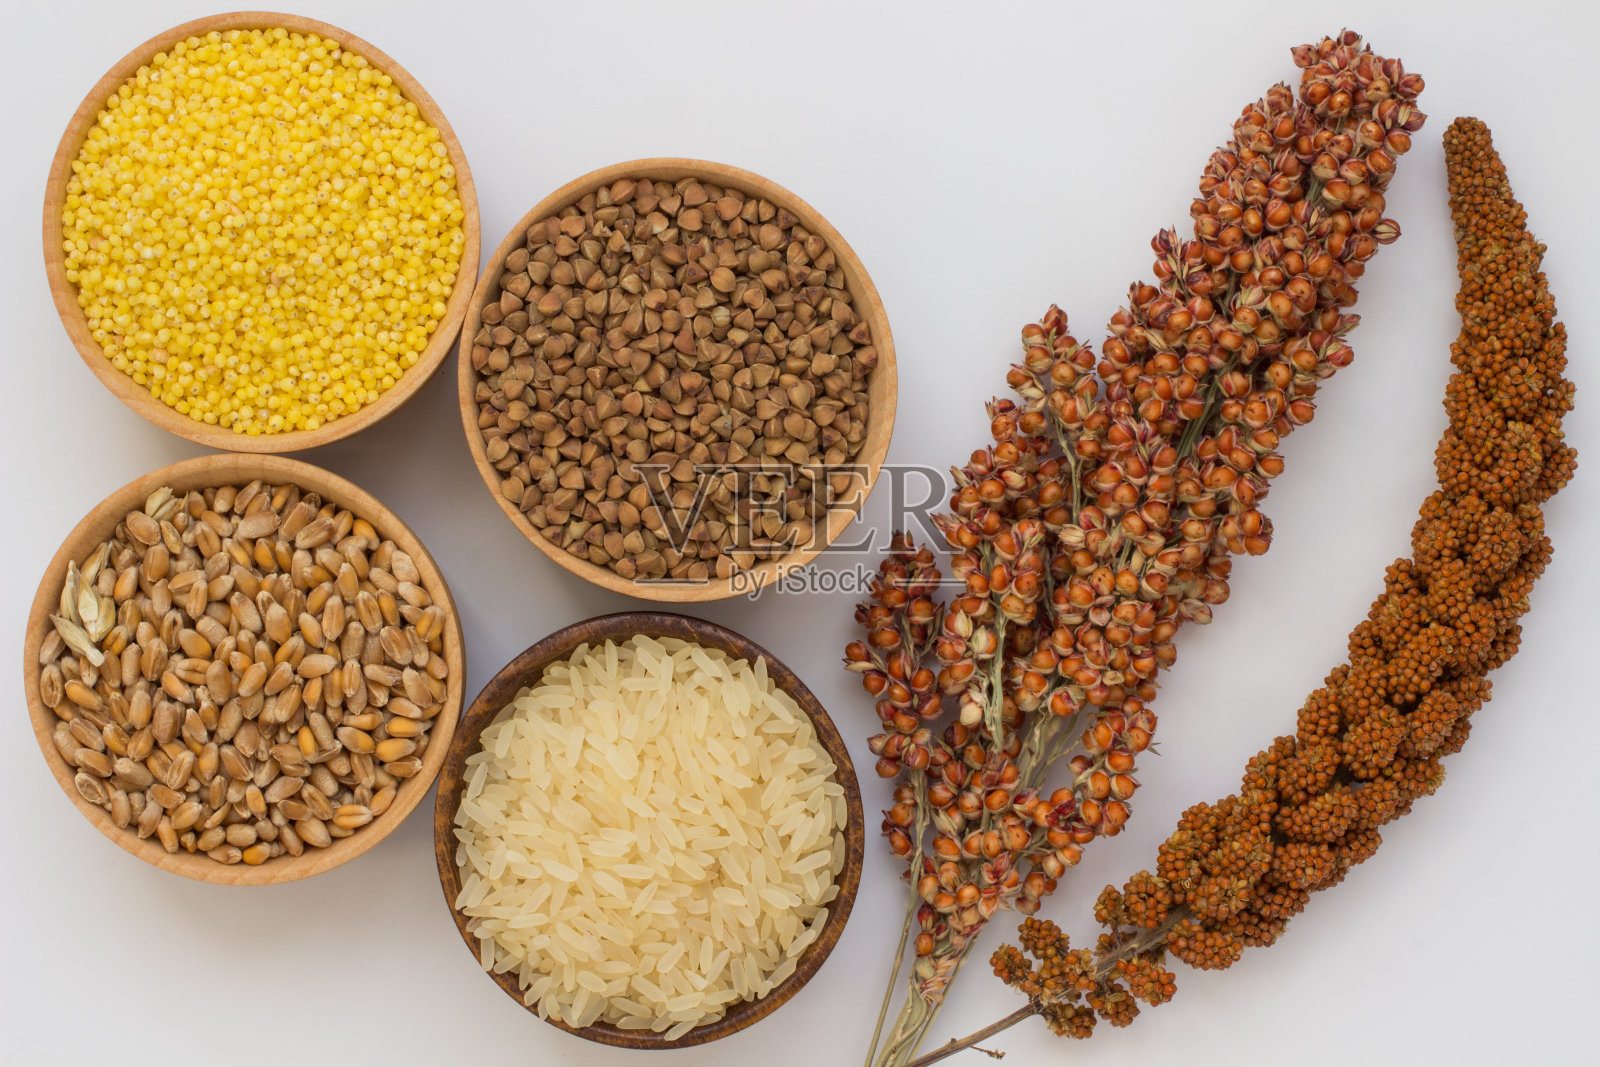 细枝红小米和高粱、荞麦、小米、大米、小麦等谷物在白色的背景上装箱照片摄影图片